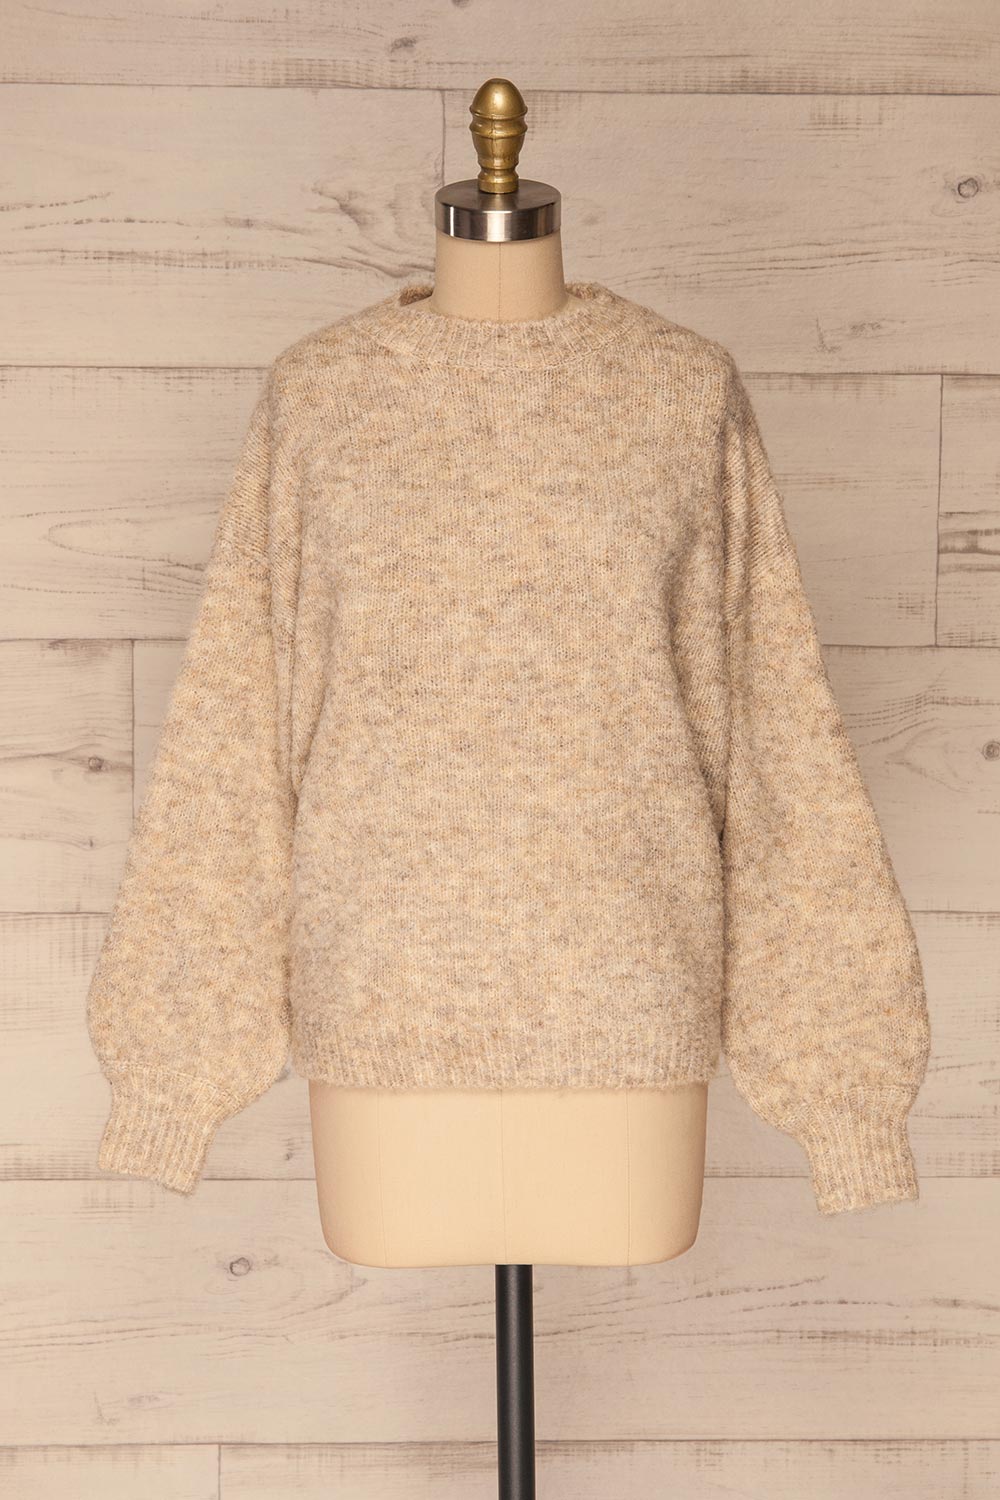 Kozle Beige Fuzzy Knitted Sweater | La petite garçonne front view 